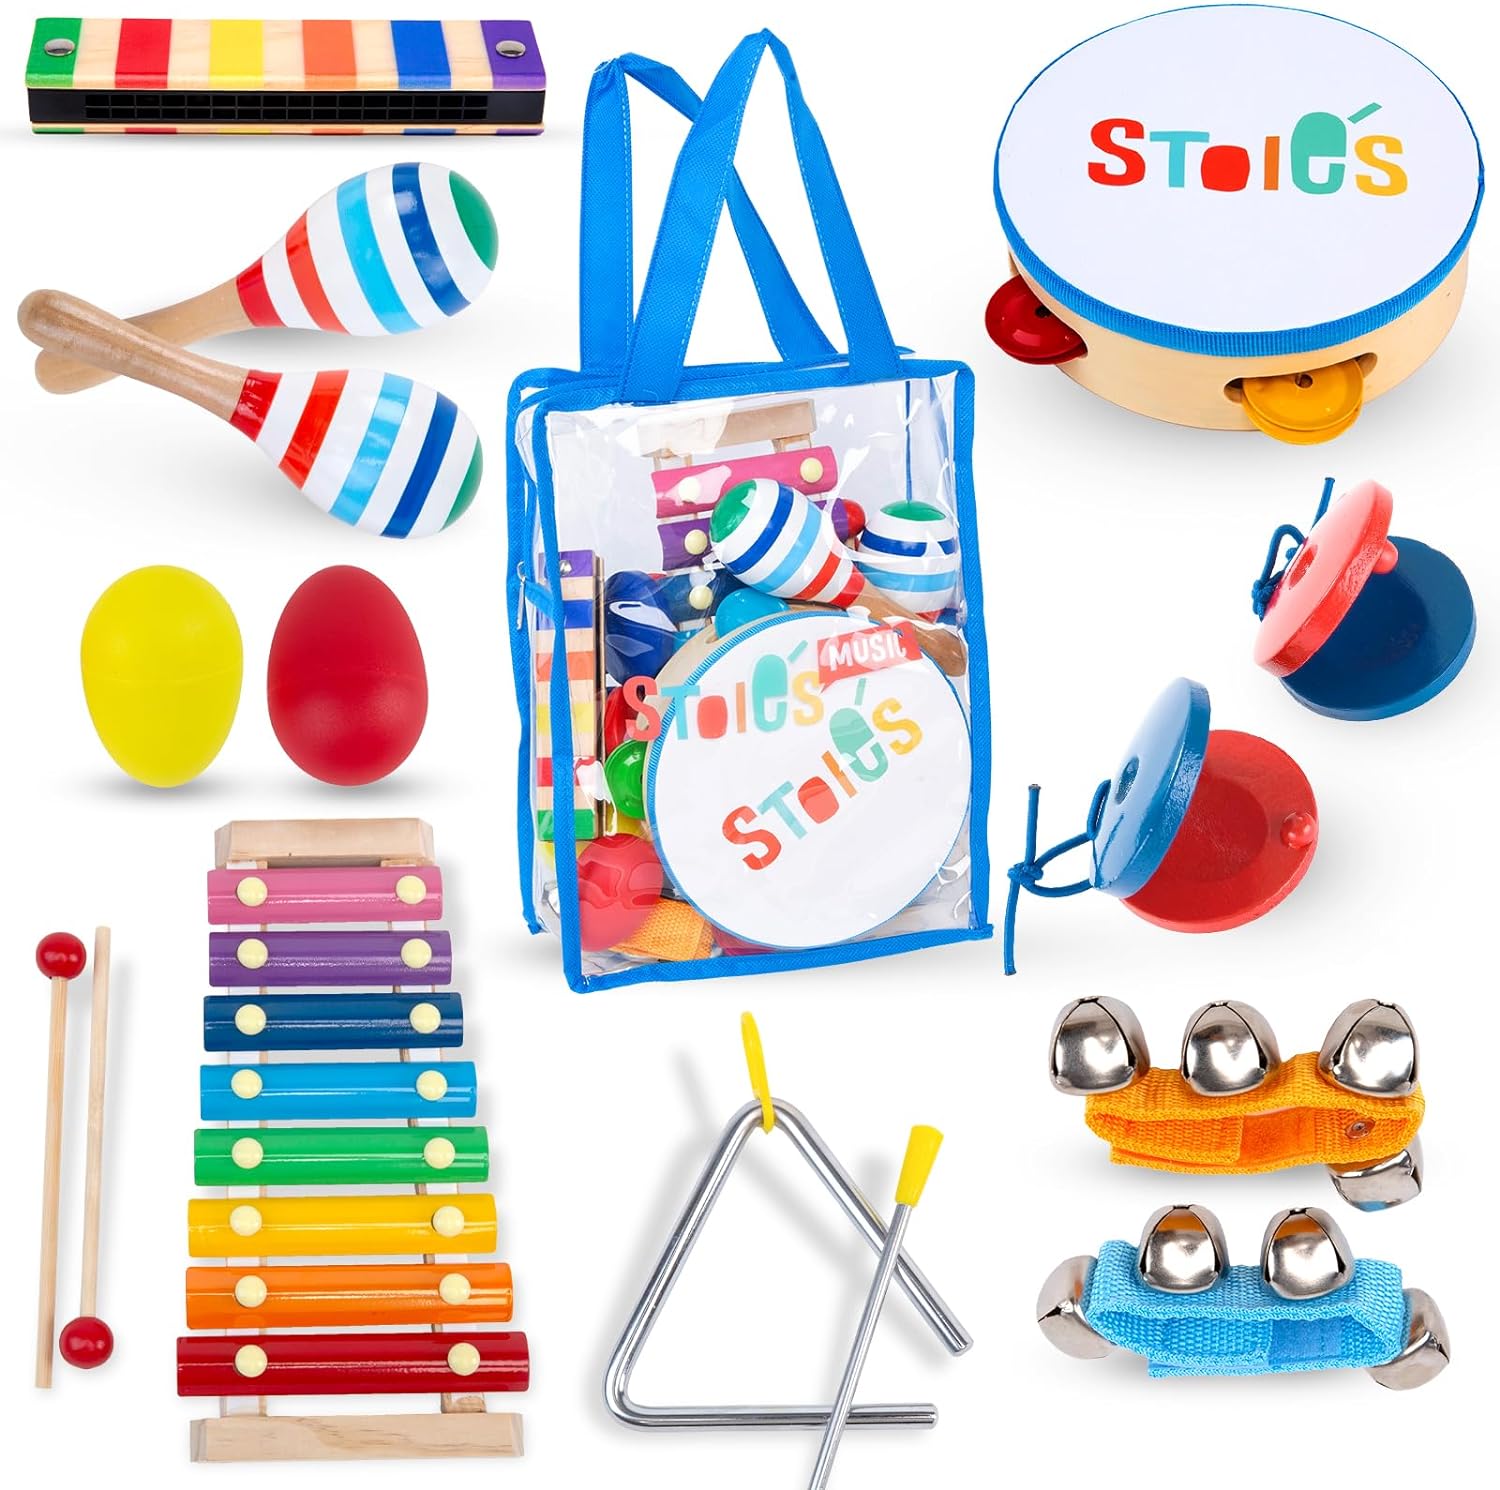 Stoie's Kids Musical Instruments Set 15 pcs Review